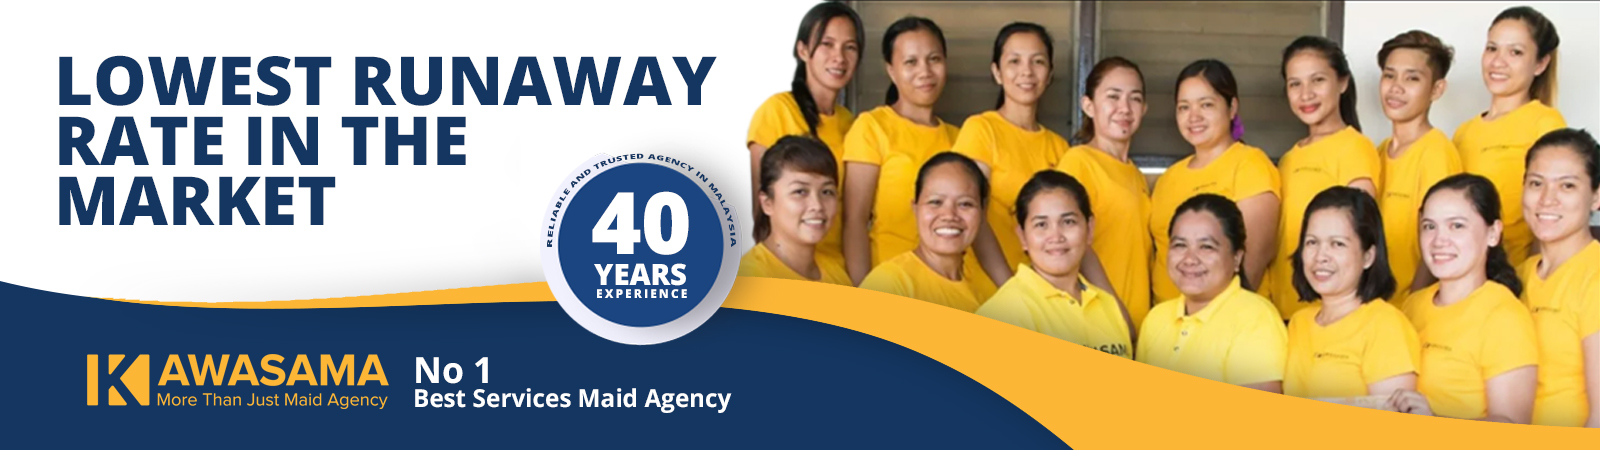 Top 10 Best Maid Agencies in KL and Selangor